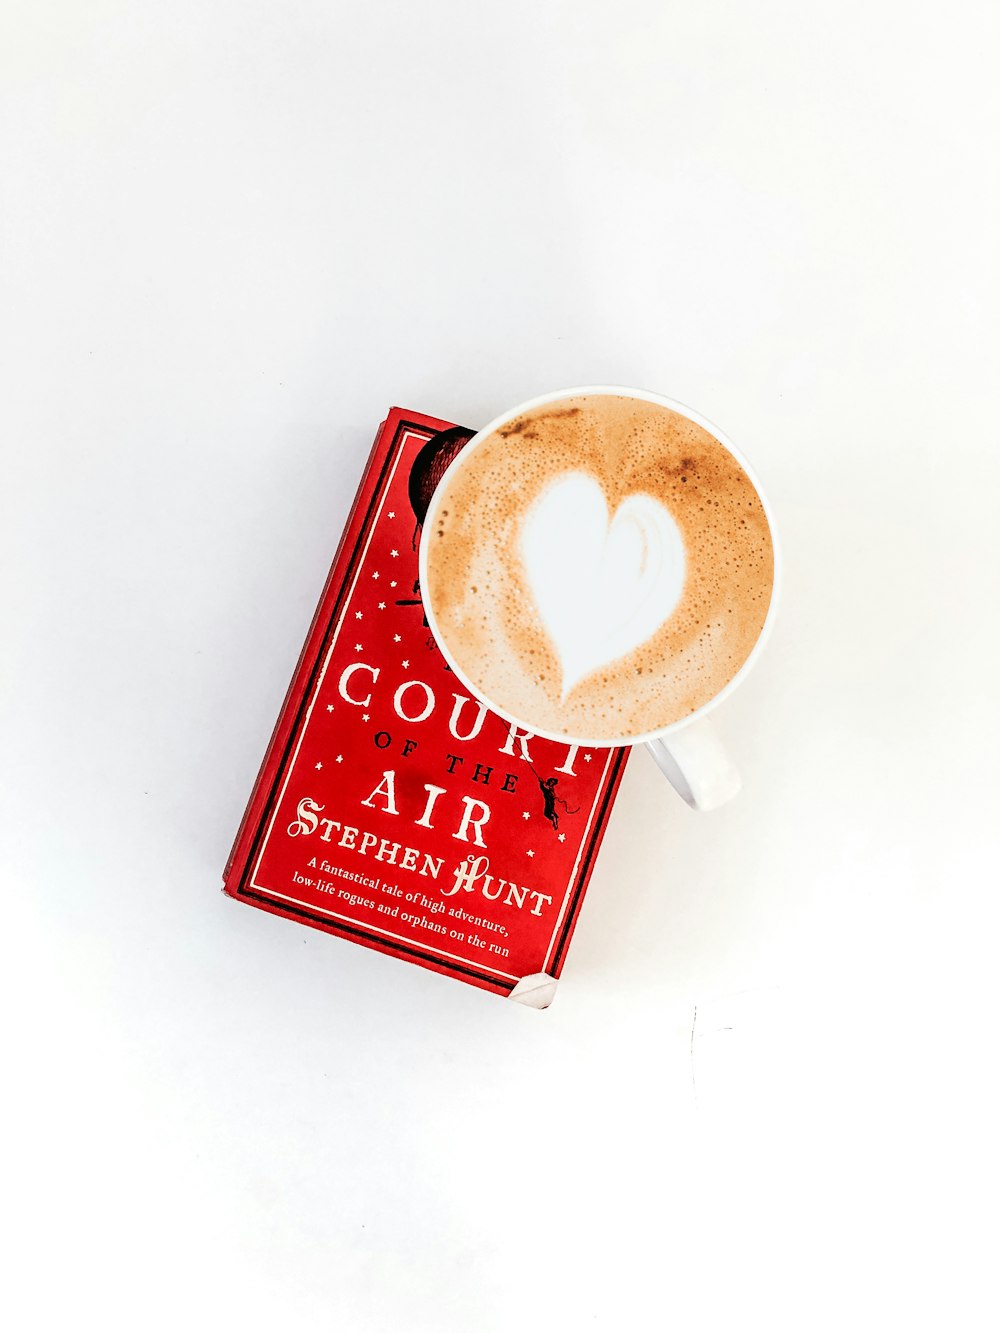 tazza rotonda in ceramica bianca sulla parte superiore del libro Court Air rosso di Stephen Hunt